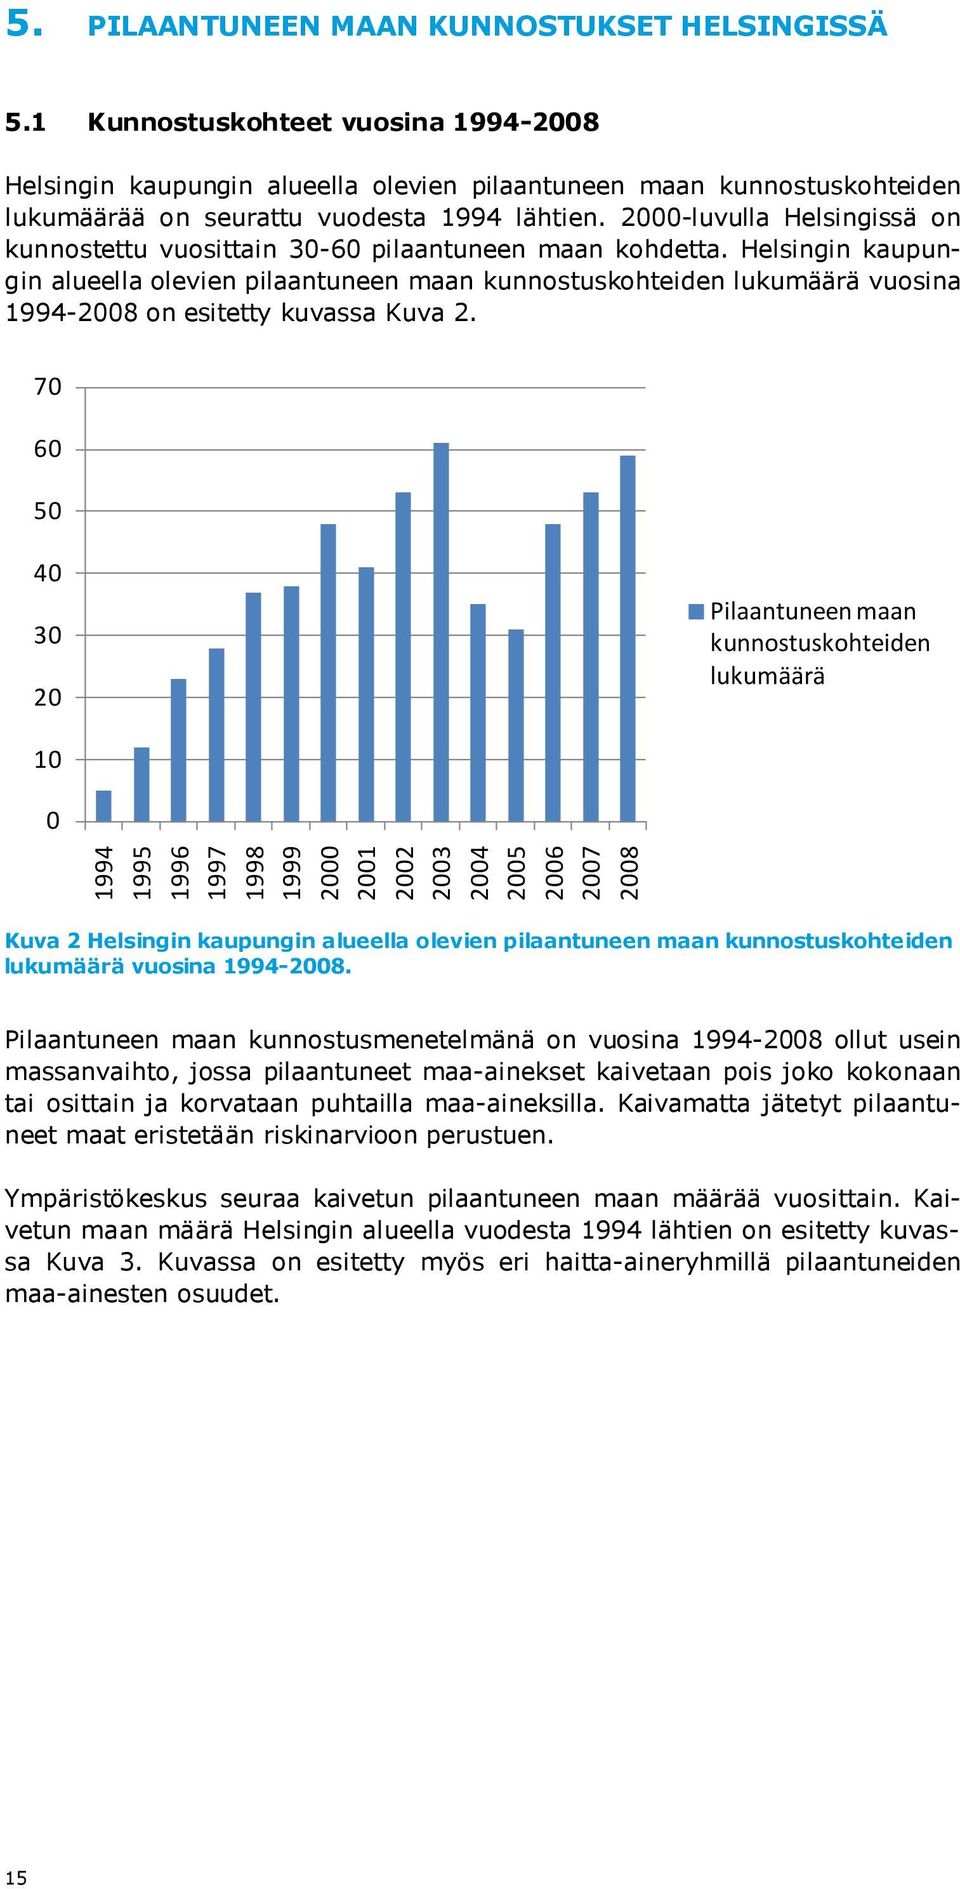 2000-luvulla Helsingissä on kunnostettu vuosittain 30-60 pilaantuneen maan kohdetta.